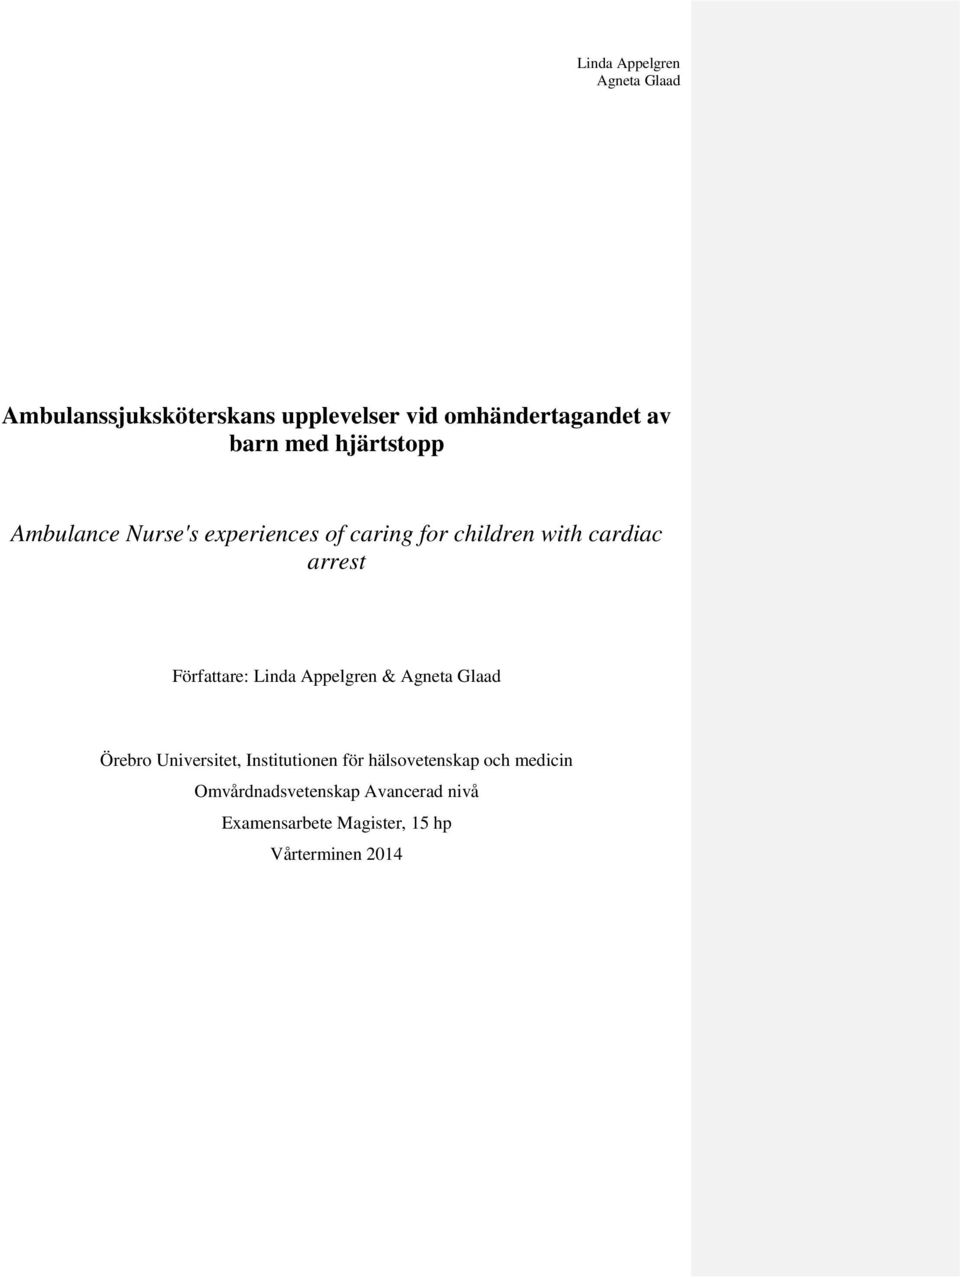 Författare: Linda Appelgren & Örebro Universitet, Institutionen för hälsovetenskap